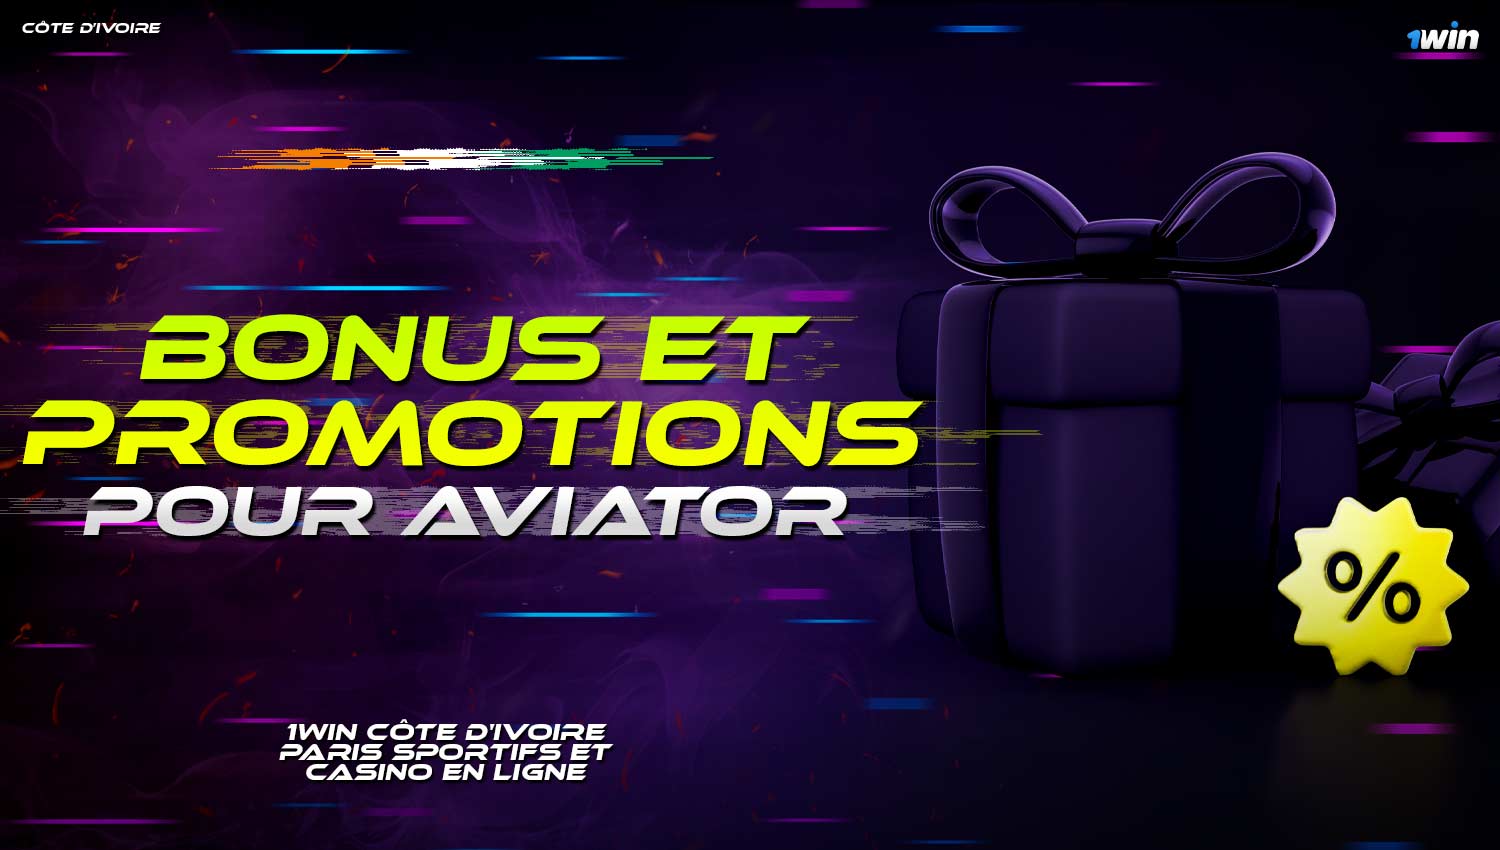 1win offre des bonus généreux et des promotions aux joueurs de Côte d'Ivoire pour augmenter leurs gains à Aviator.